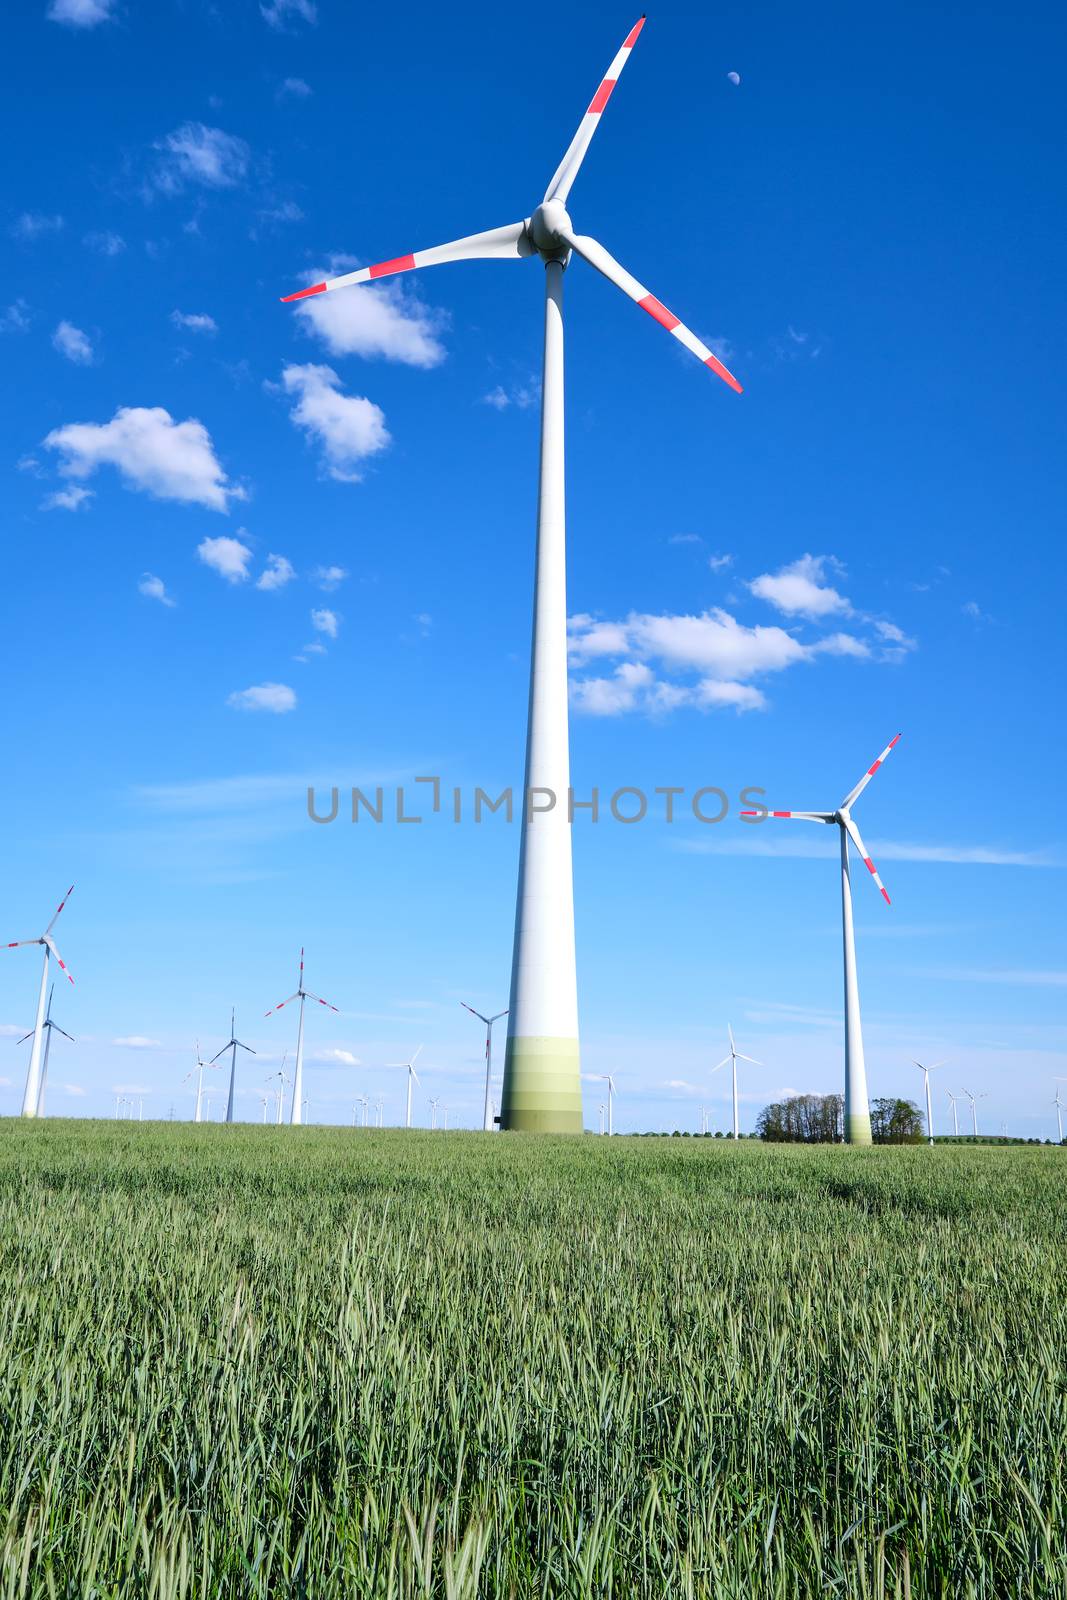 Wind energy generators in a cornfield seen in Germany